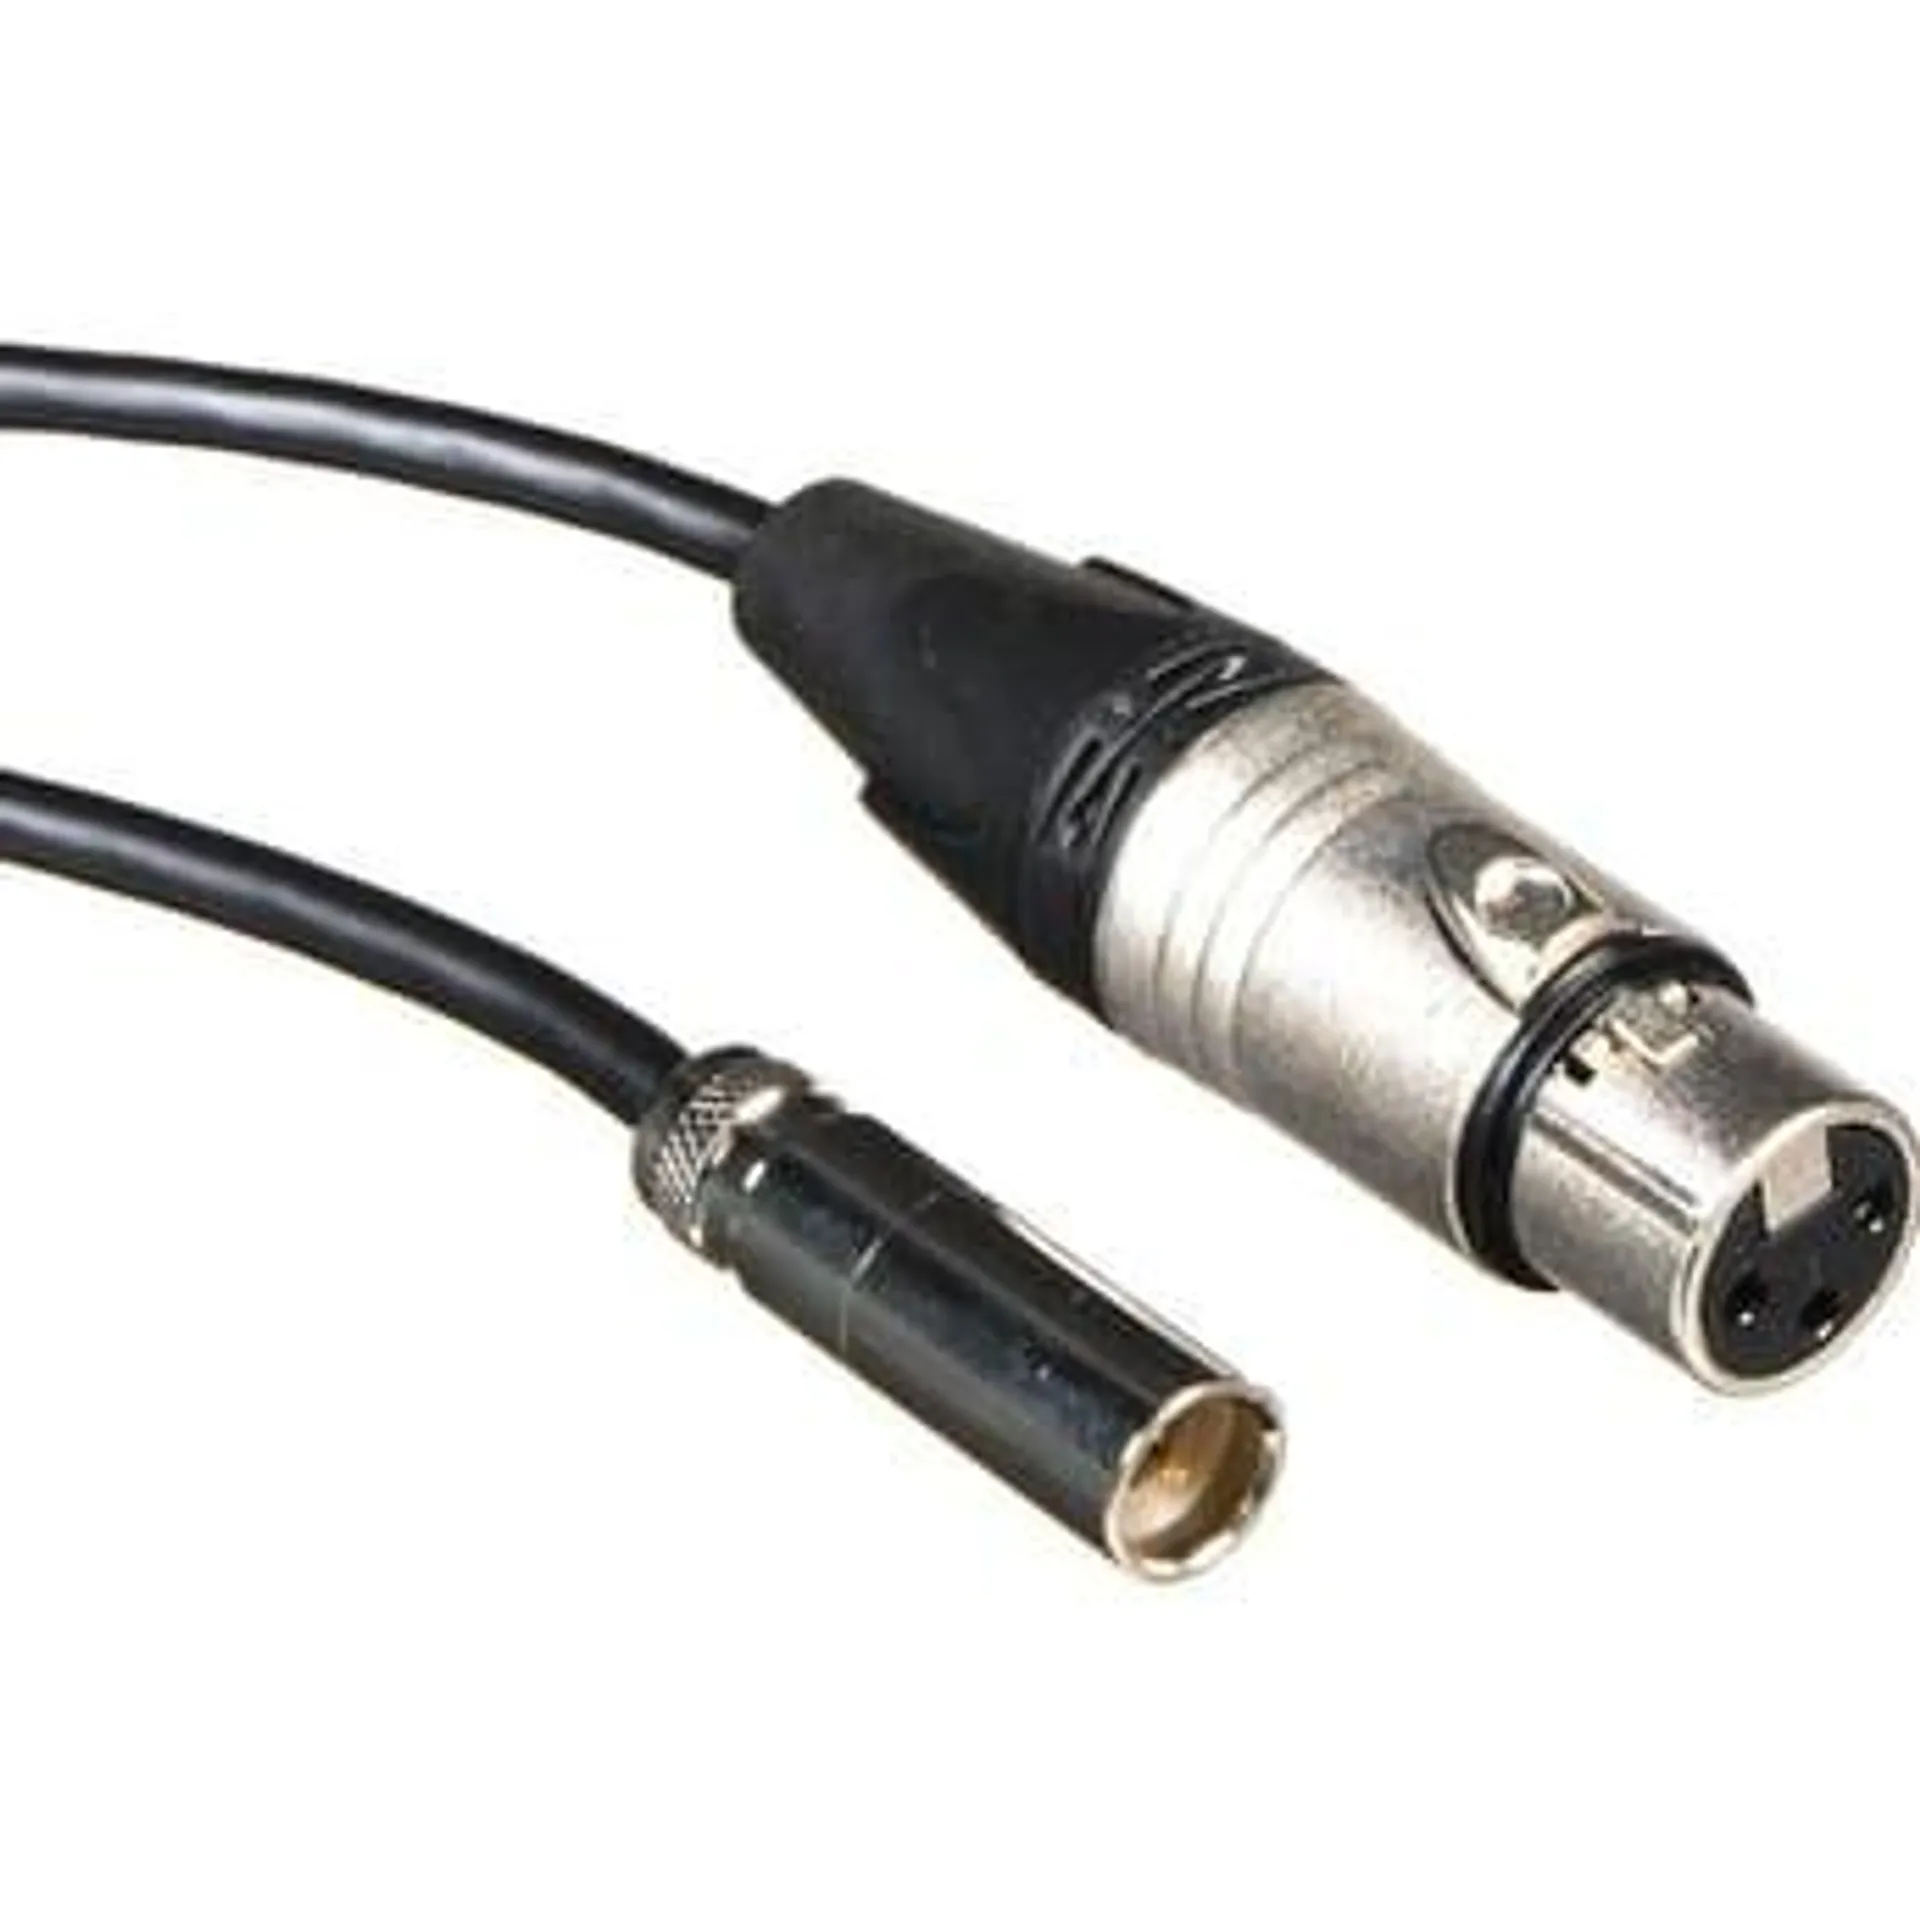 Blackmagic Design Set of 2 Mini XLR to XLR Audio Cables for Video Assist 4K (50cm)